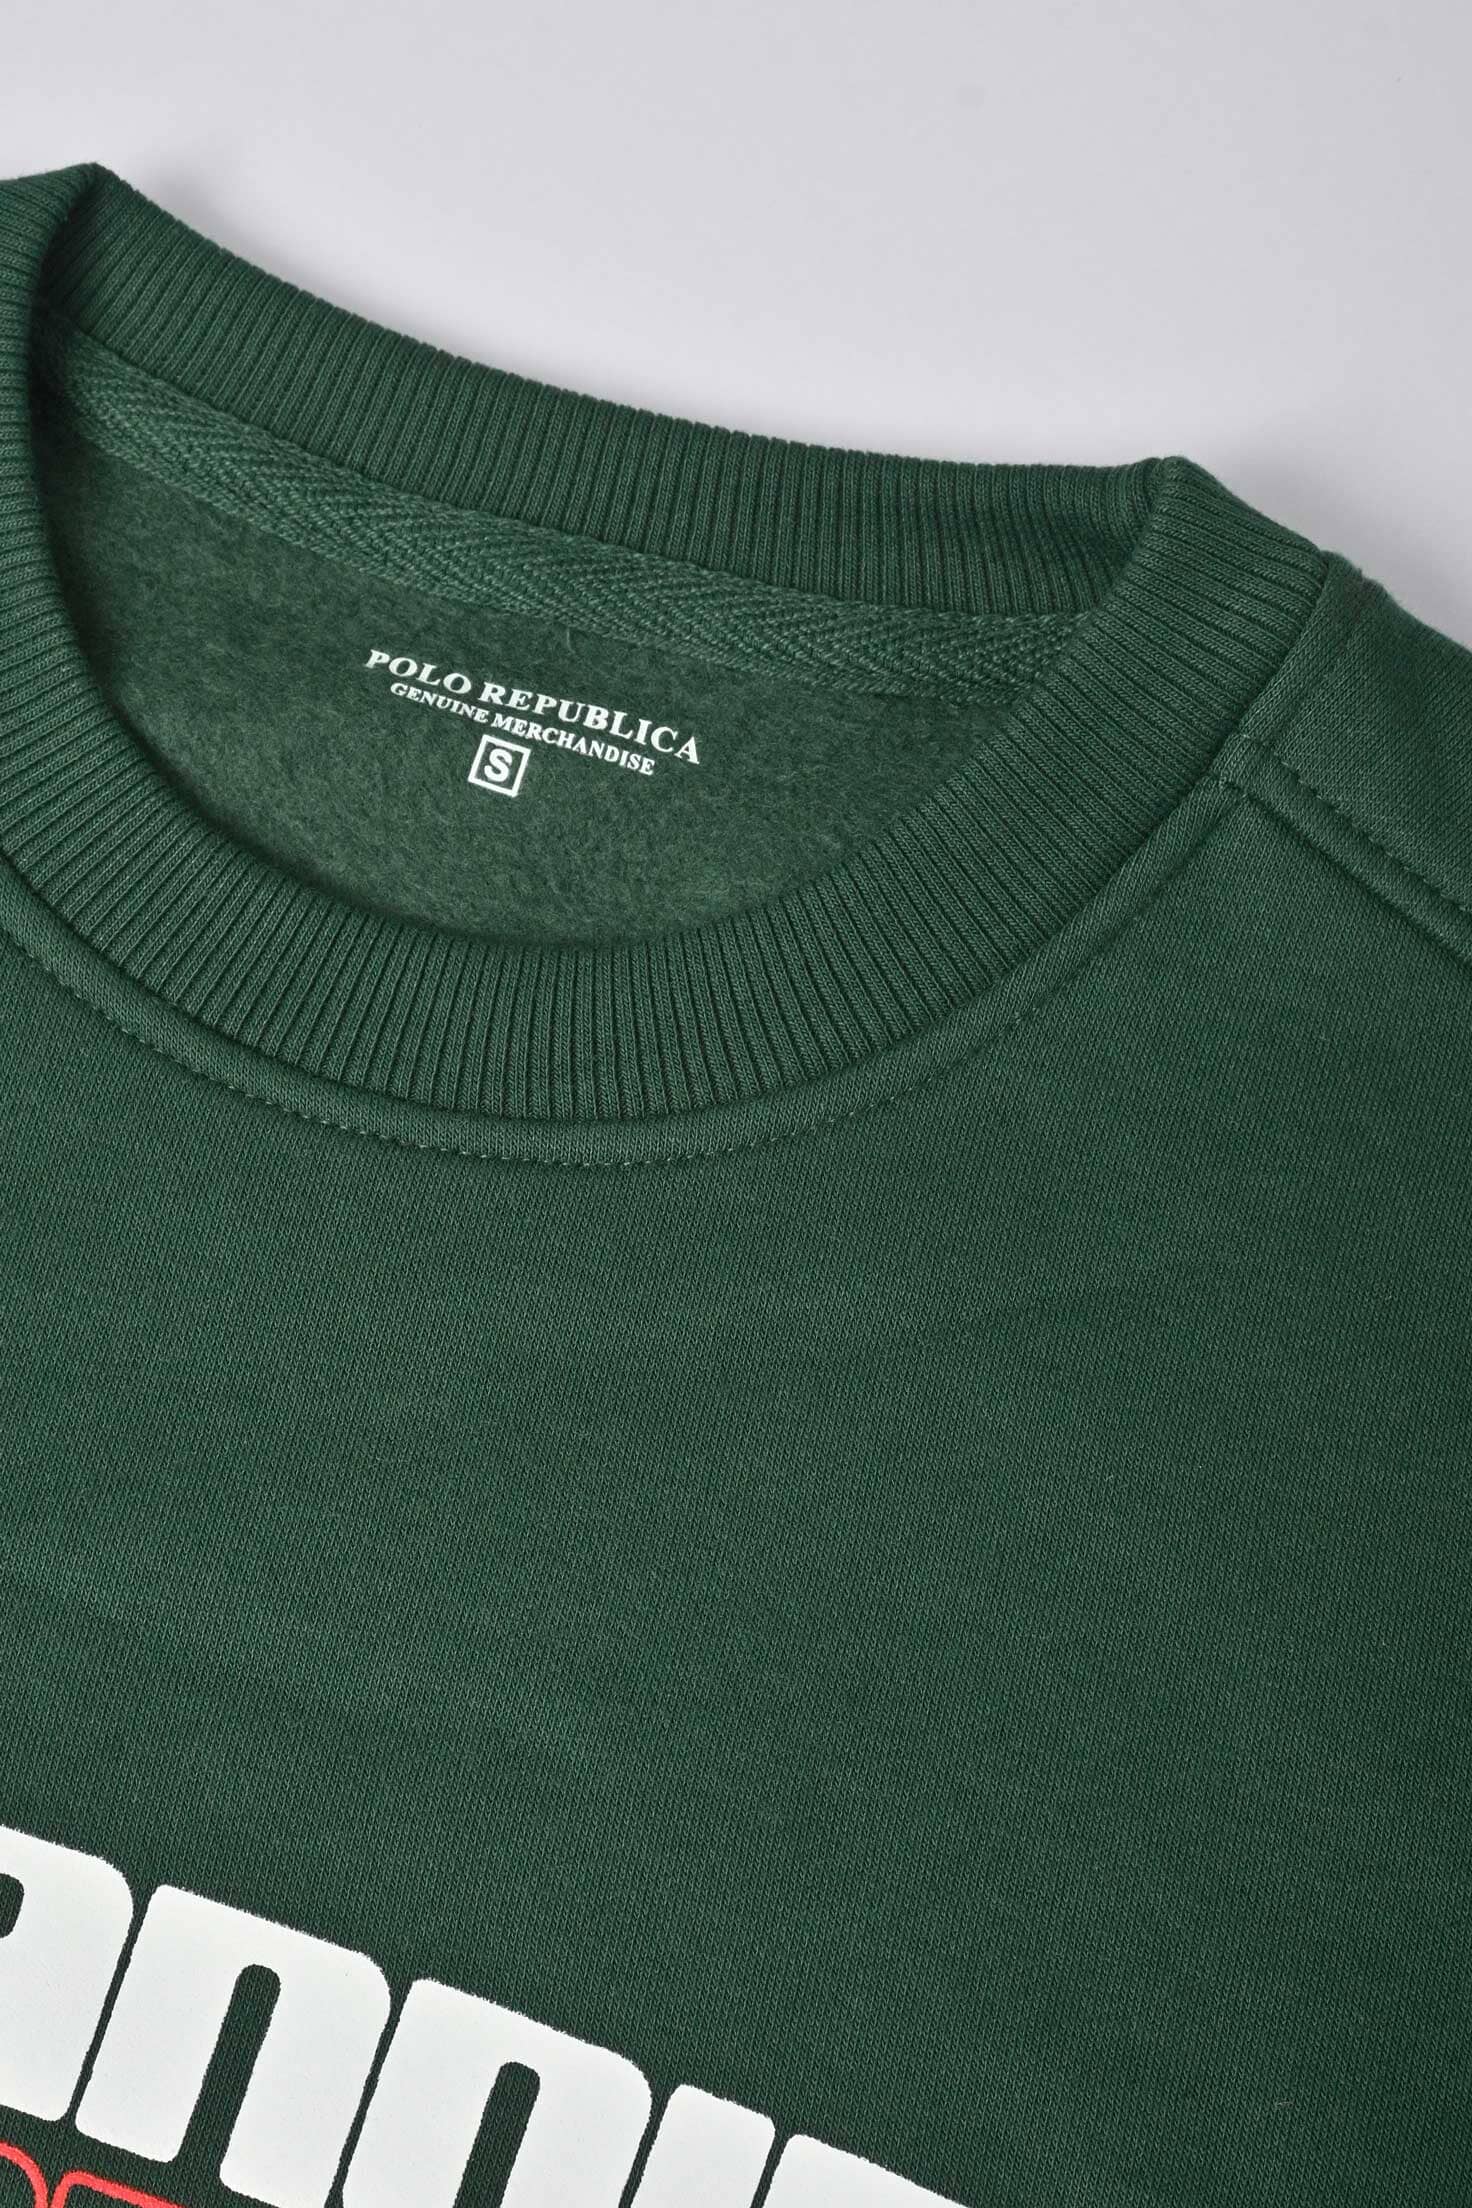 Polo Republica Men's Paranoid Printed Fleece Sweat Shirt